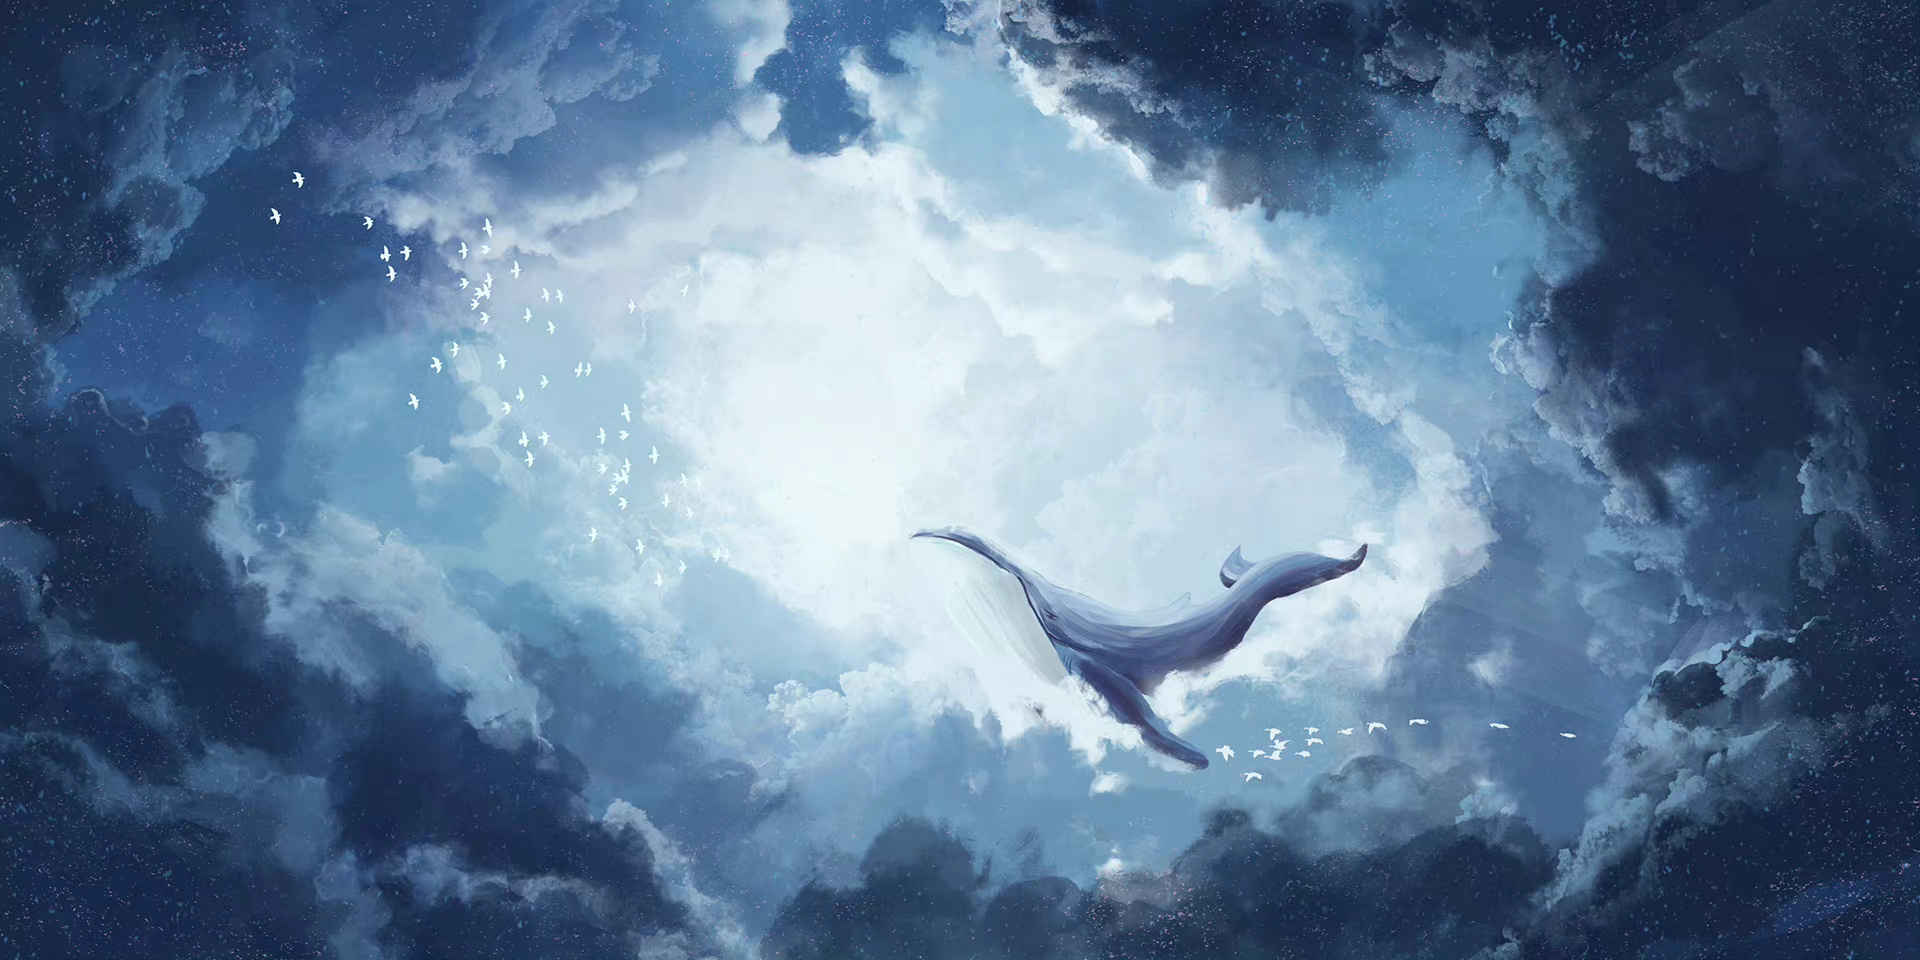 唯美梦幻天空飞鸟与鲸风景背景素材